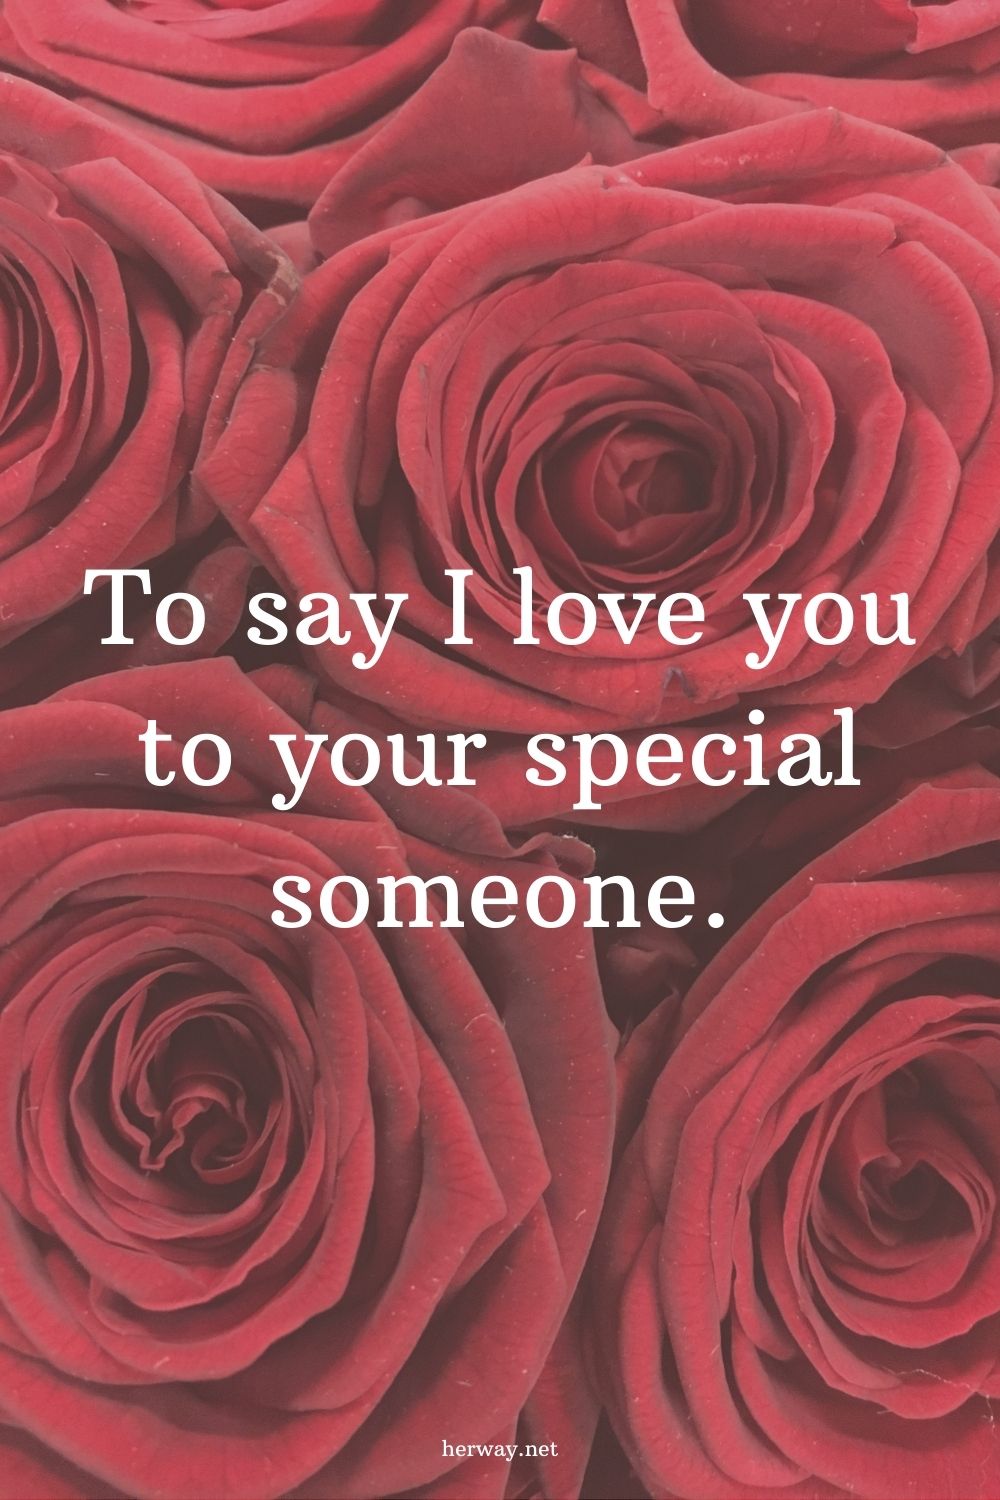 150 modi creativi per dire "ti amo" alla tua persona speciale